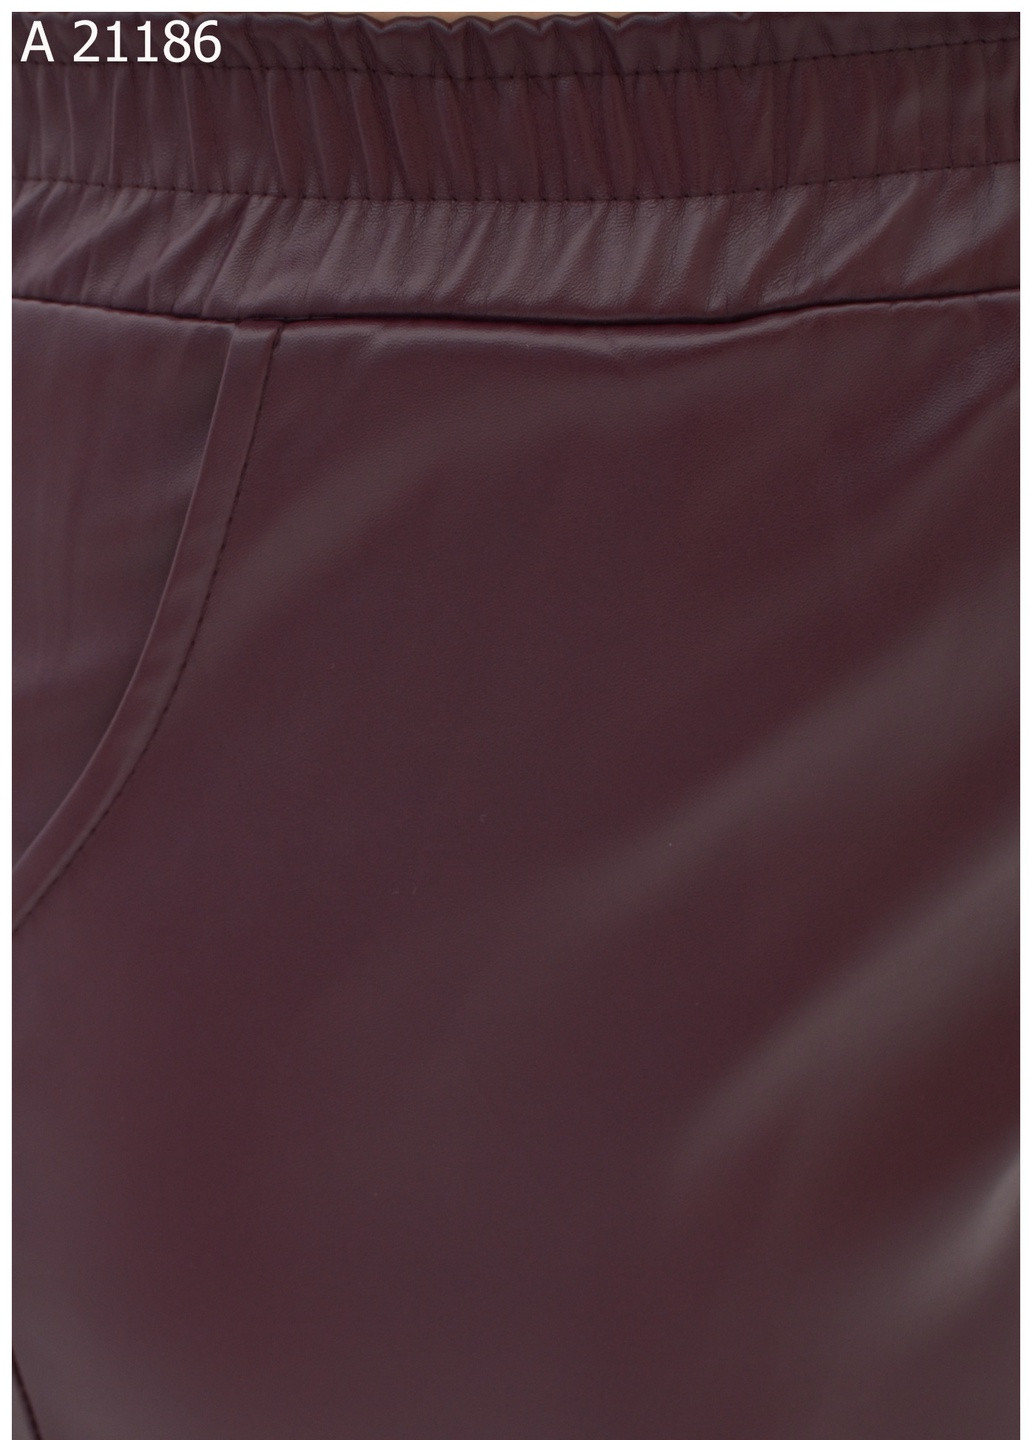 Женские штаны больших размеров SK (258336022)